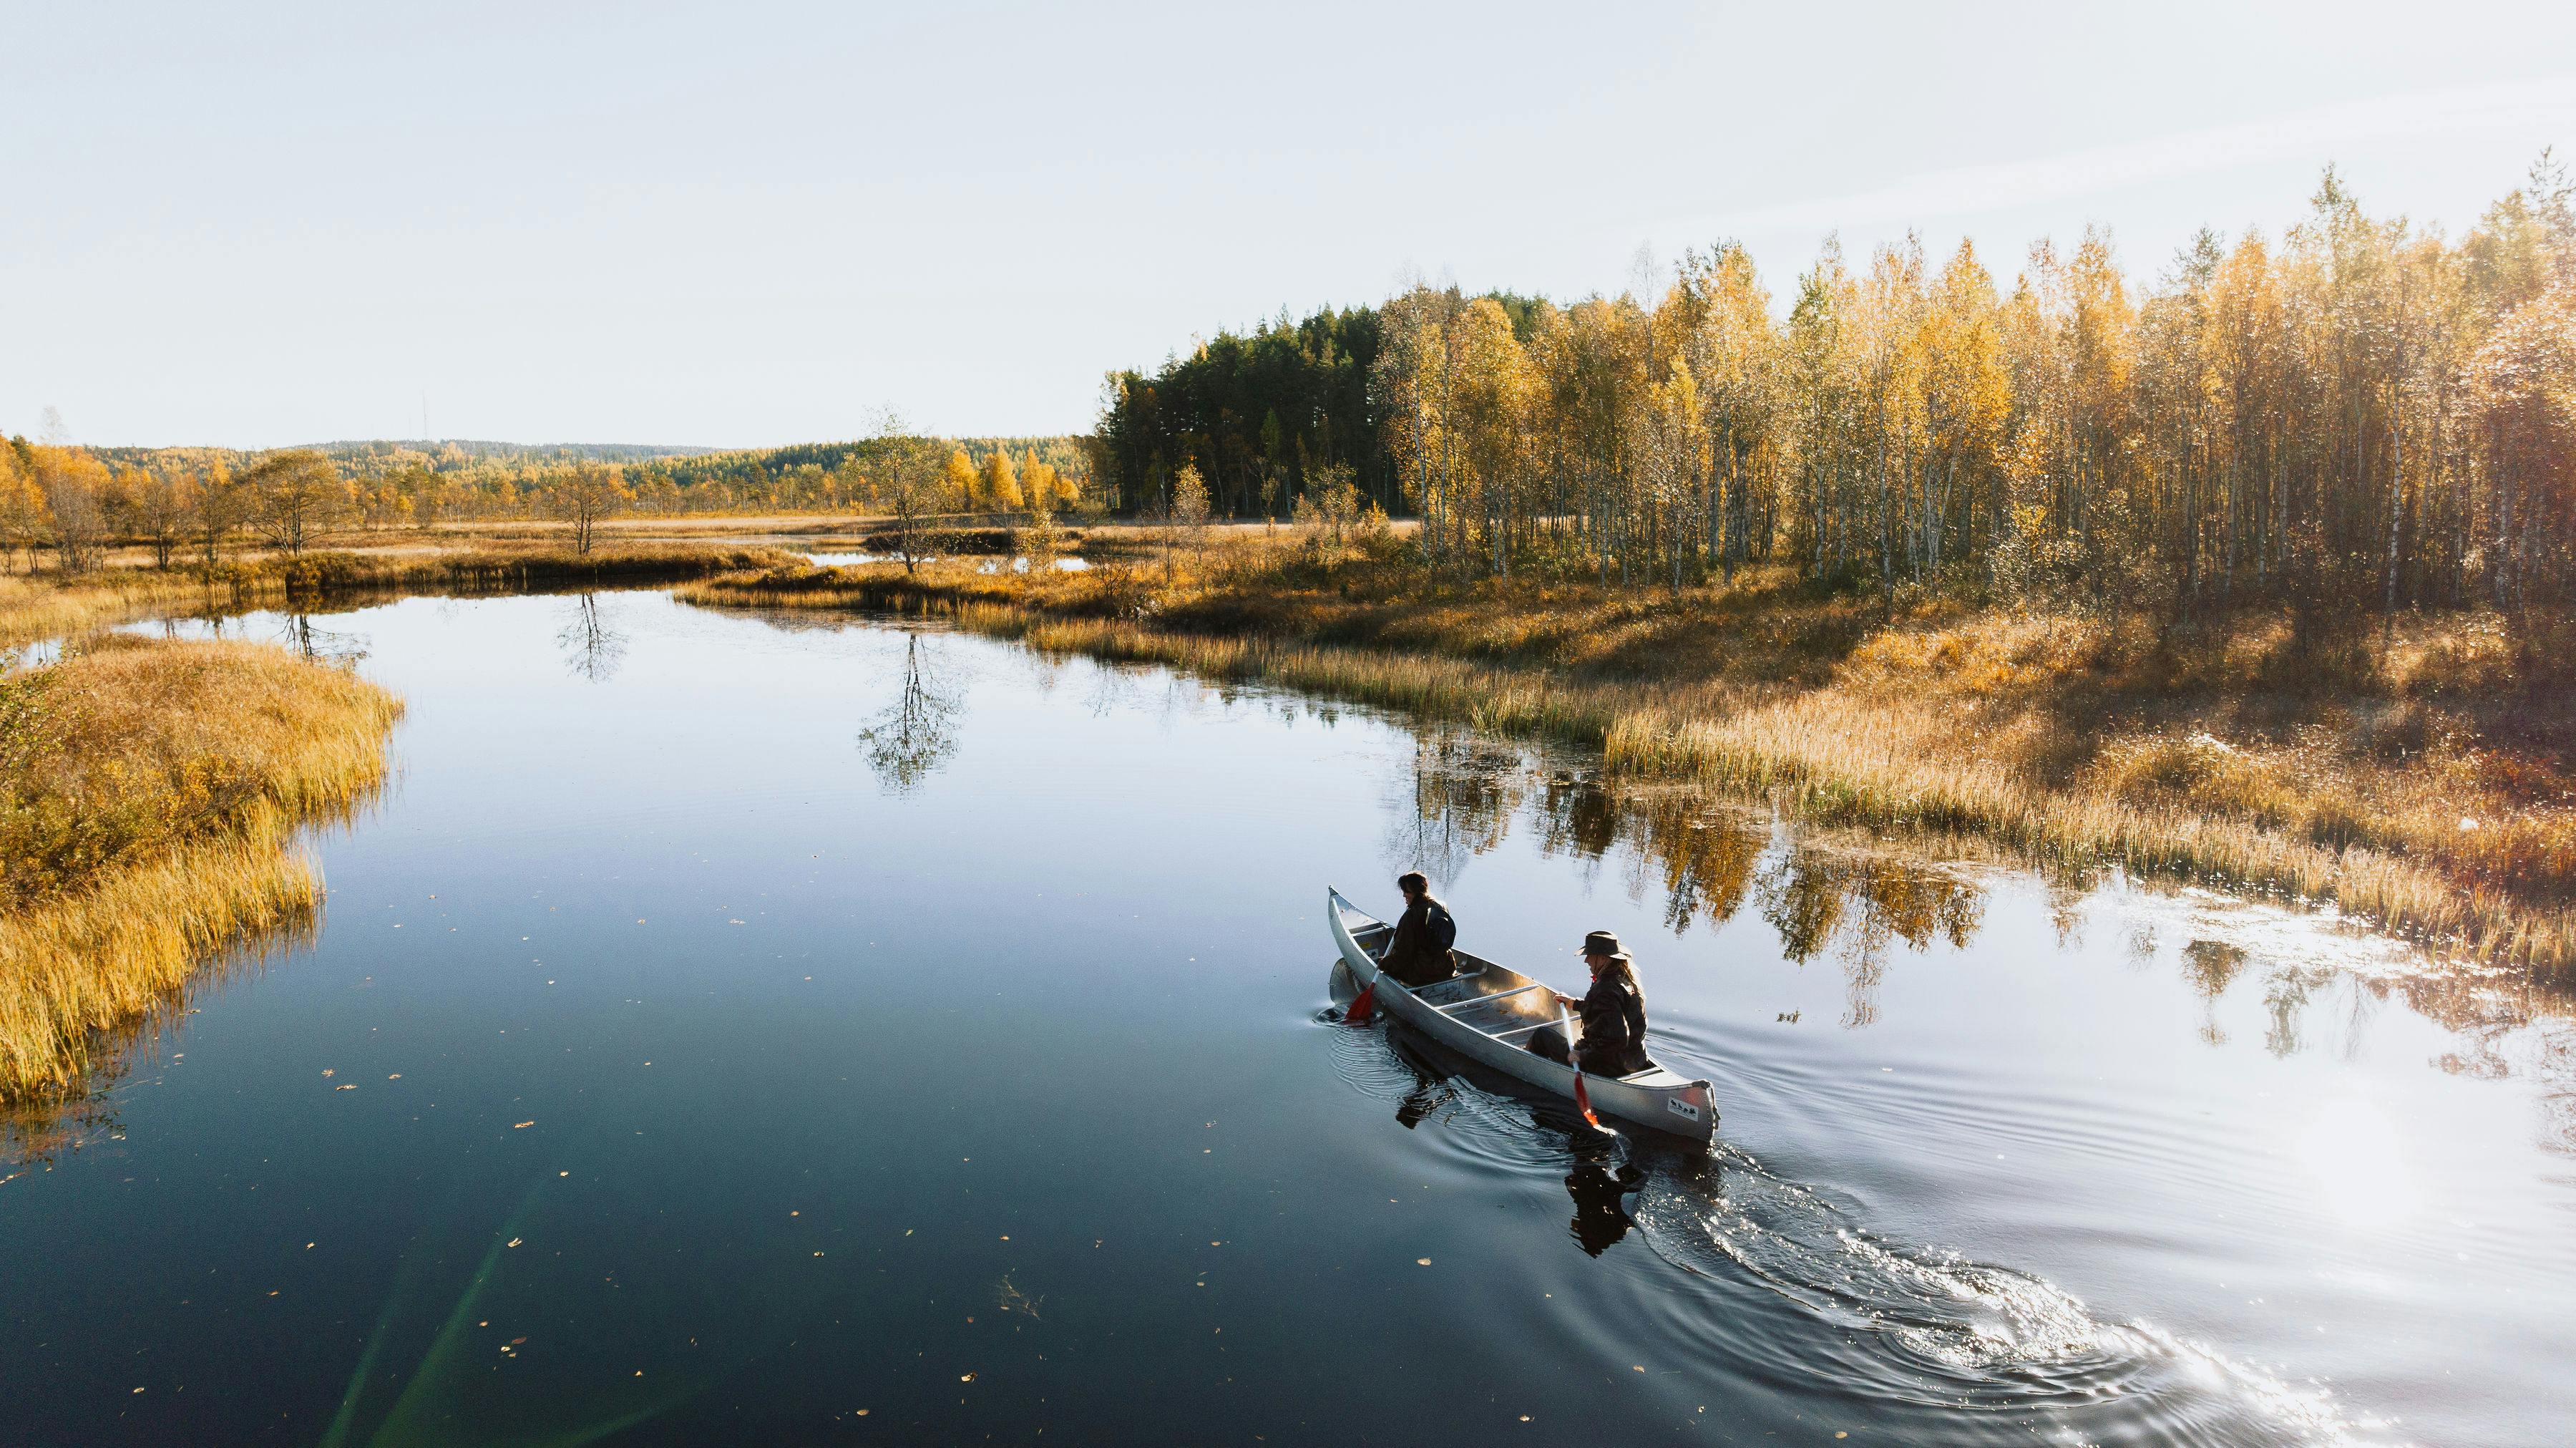 Una coppia gode della natura calma e incontaminata mentre fa canoa su un'acqua specchio.